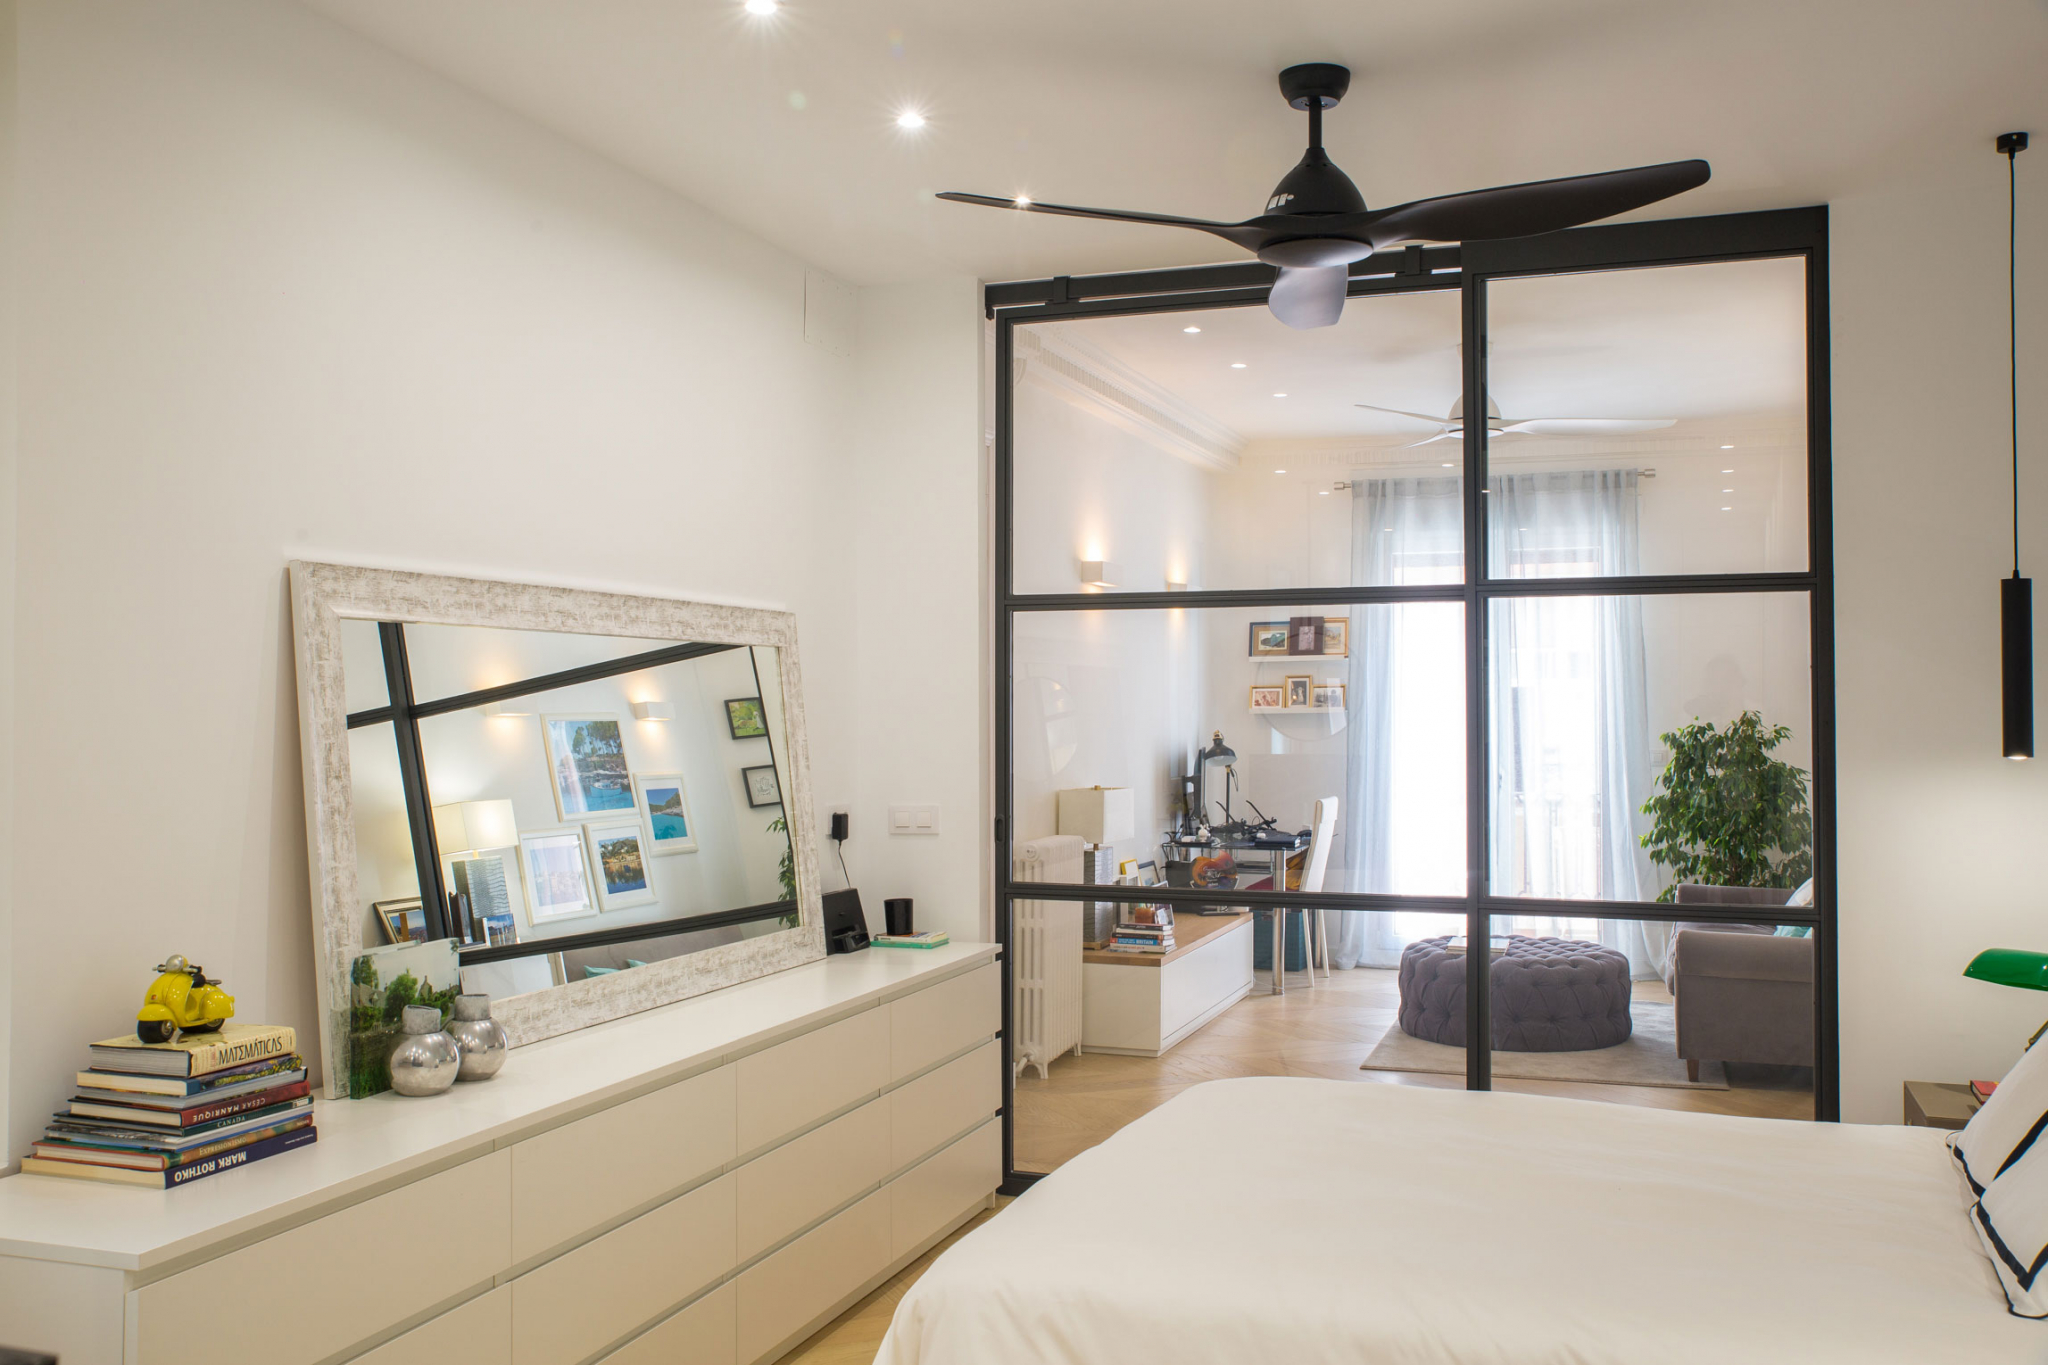 Dormitorio con separación de espacios con un panel acristalado